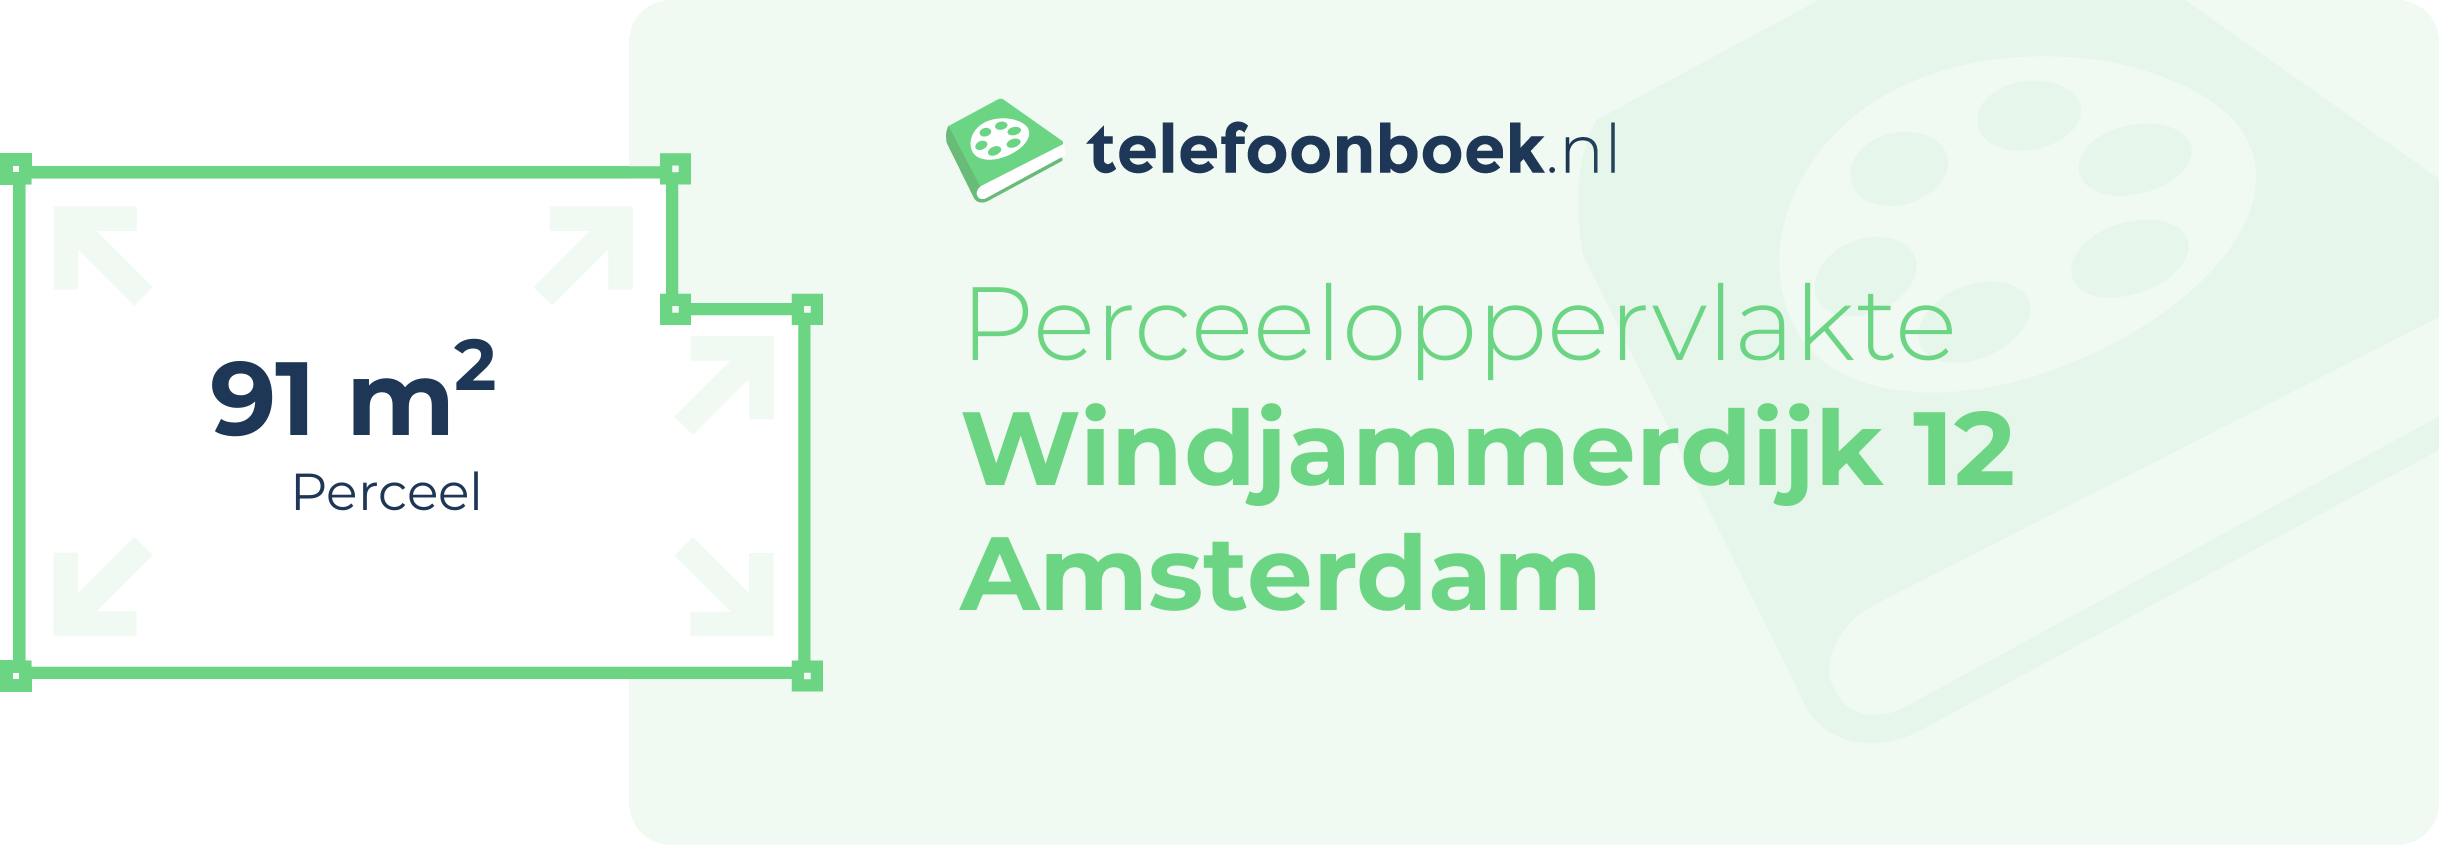 Perceeloppervlakte Windjammerdijk 12 Amsterdam